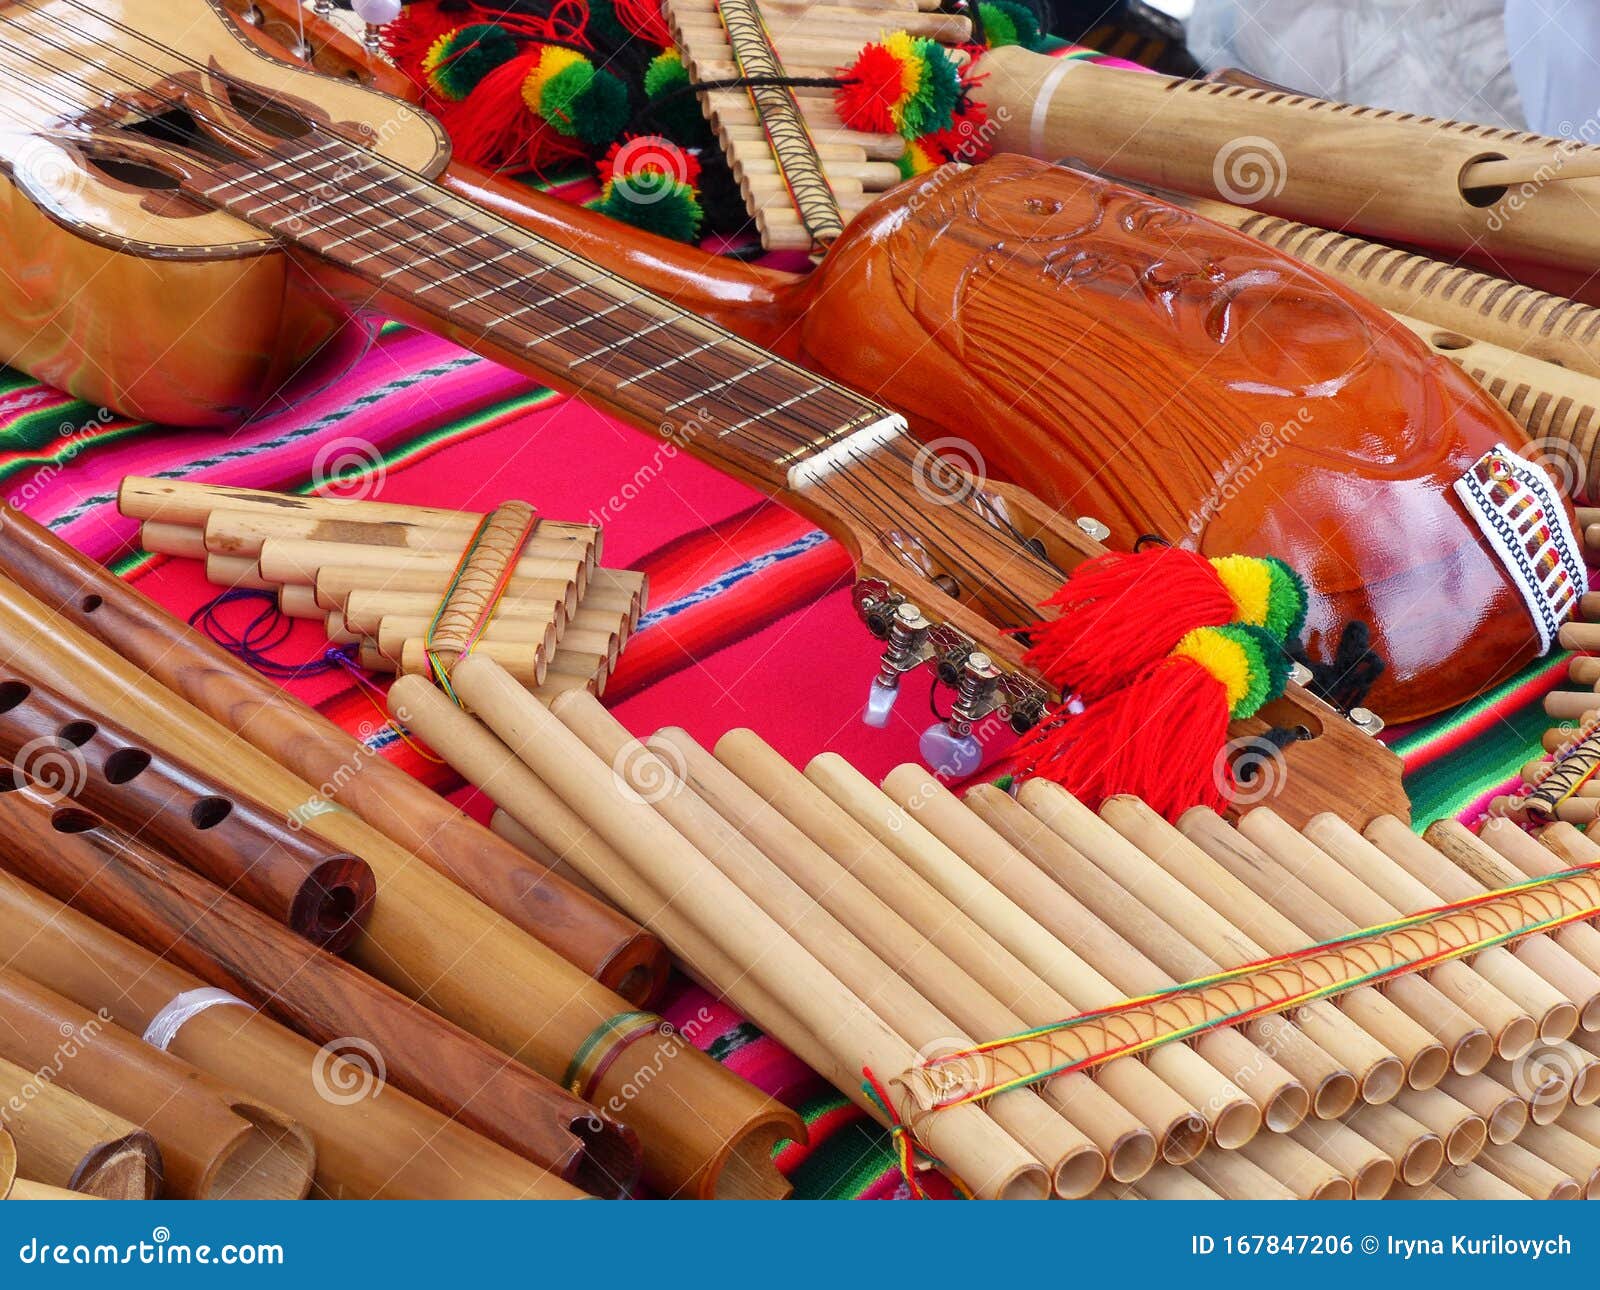 Flaute Y Guitarras, Ecuador de archivo - Imagen de instrumental, tubo: 167847206